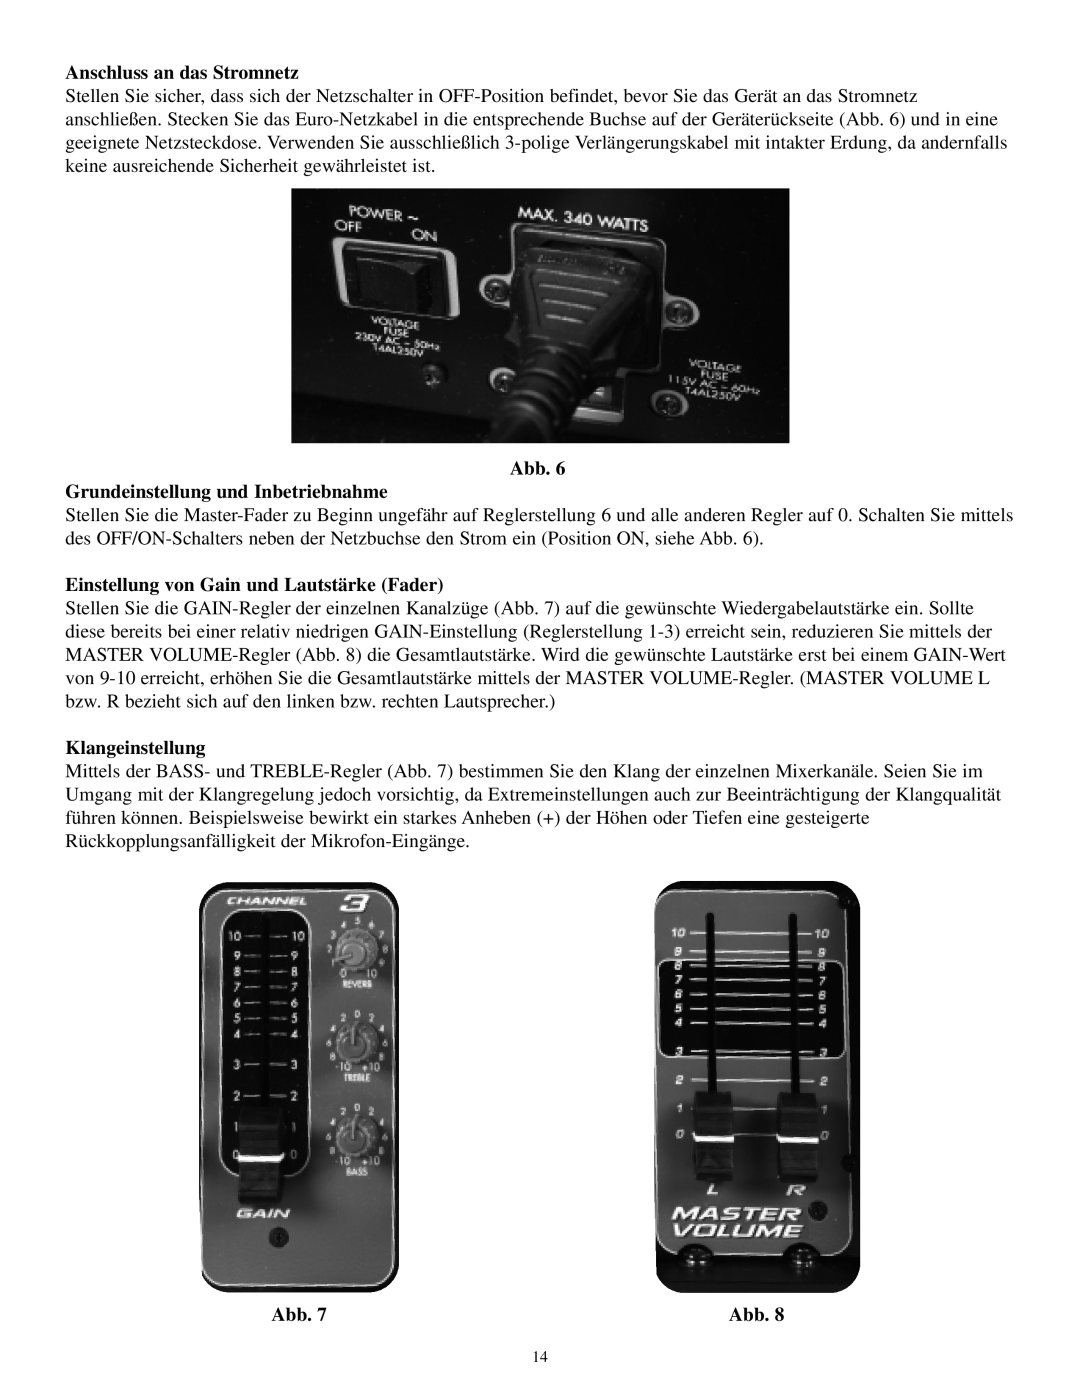 Musica 2000 Anschluss an das Stromnetz, Abb Grundeinstellung und Inbetriebnahme, Einstellung von Gain und Lautstärke Fader 